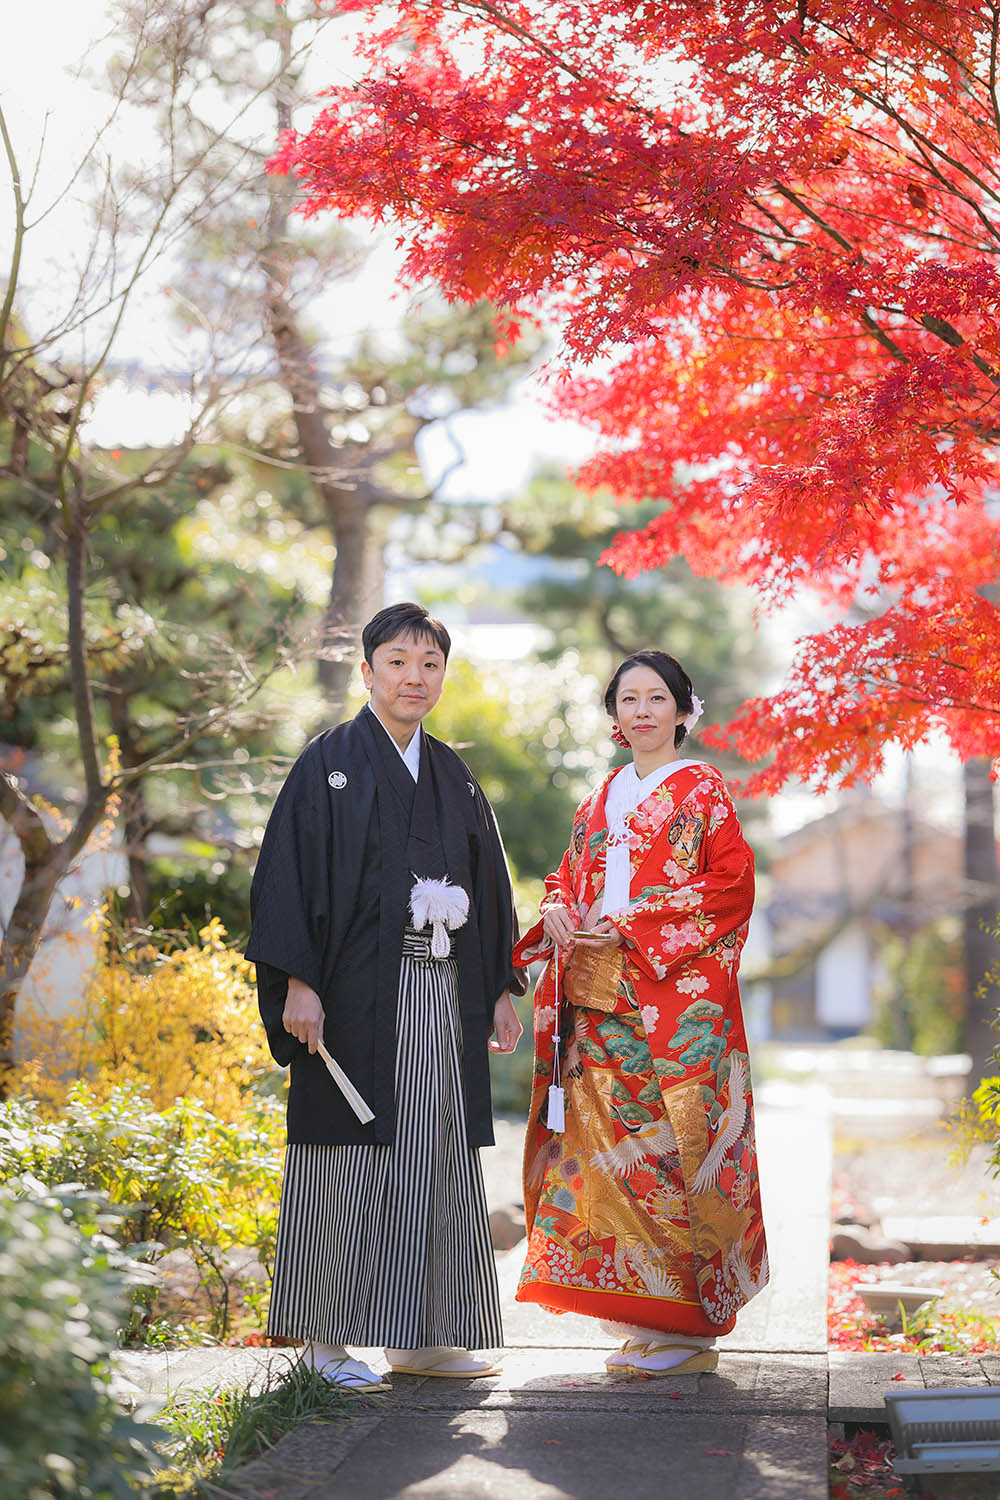 12月の京都の紅葉を背景に立ち姿の新郎新婦様